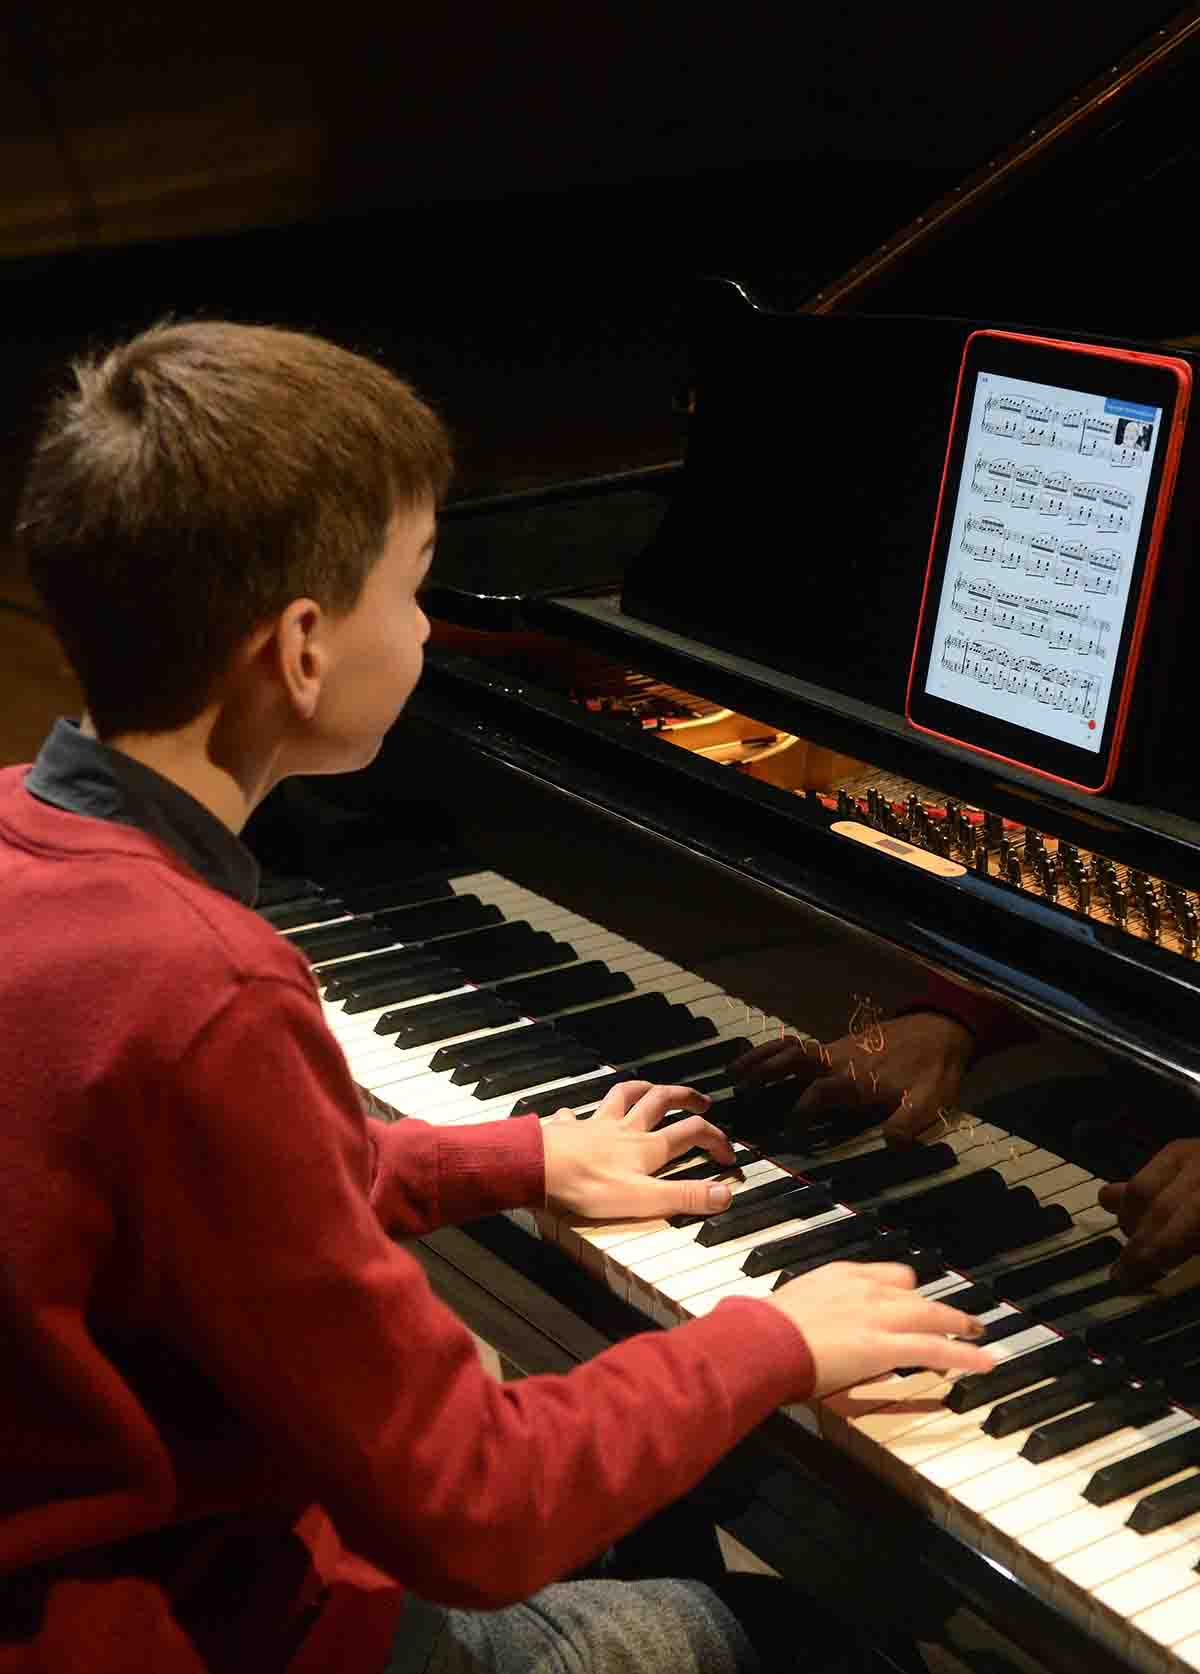 Budapest, 2015. október 13. Boros Misi zongorista mutatja be egy Apple iPad táblagép segítségével a Musica Piano kottaalkalmazást a Budapest Music Centerben tartott sajtóbemutatón 2015. október 13-án. Az egyelőre csak a zongorairodalmat felölelő, de idővel más komolyzenei műfajokra is kiterjesztésre kerülő, nagyrészt ingyenes alkalmazás a klasszikus zene játszását és oktatását gazdagíthatja. MTI Fotó: Soós Lajos